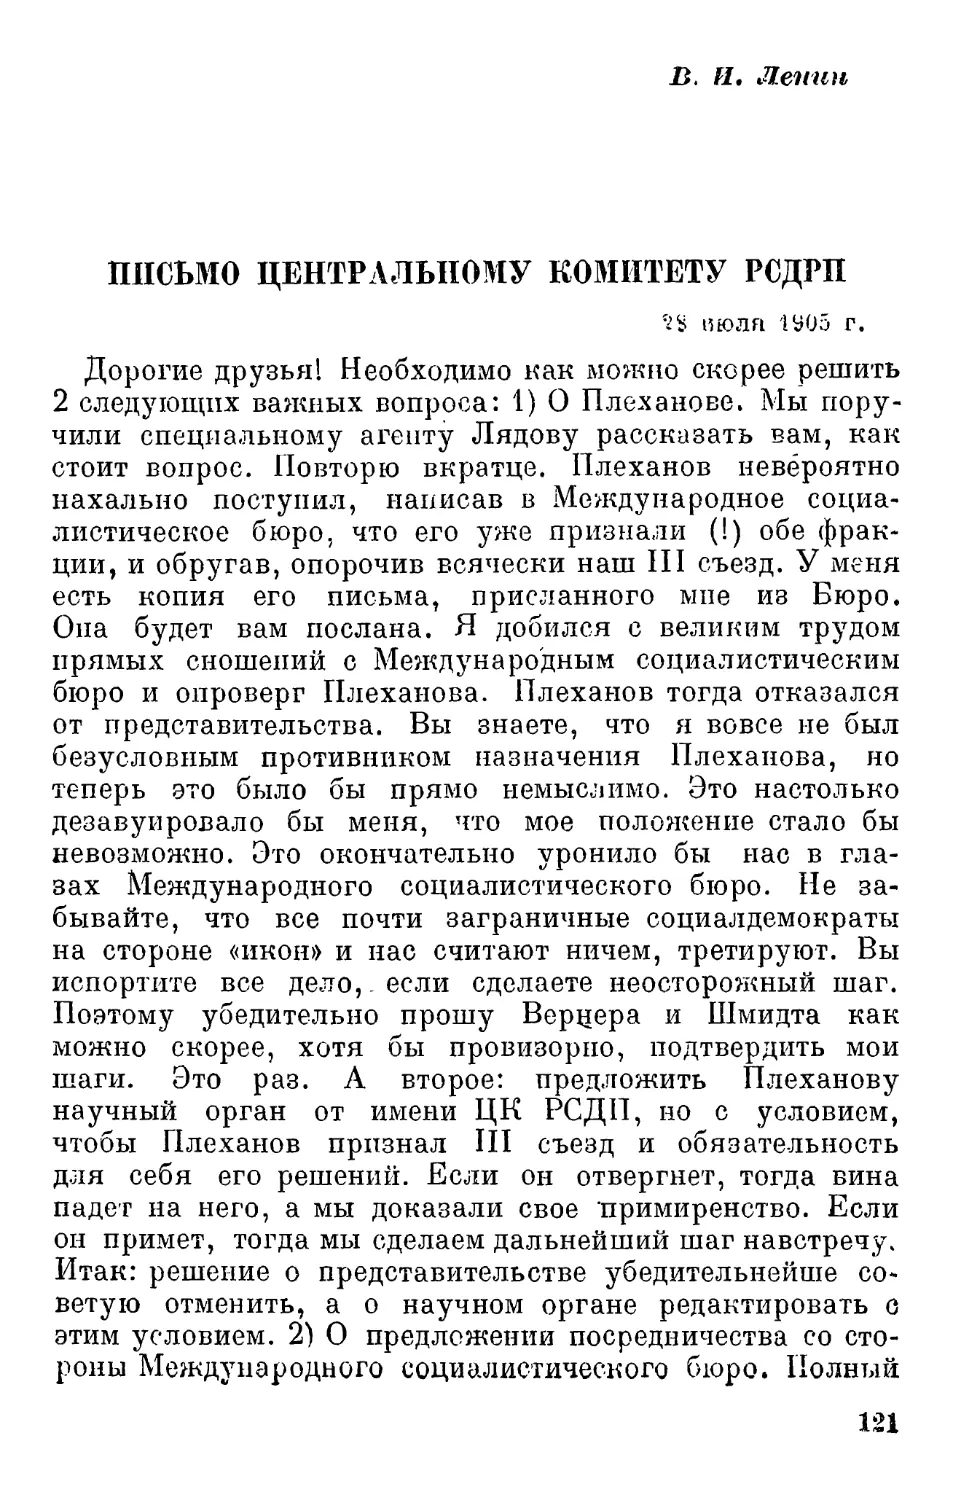 В.И. Ленин. Письмо ЦК РСДРП. 28 июля 1905 г.